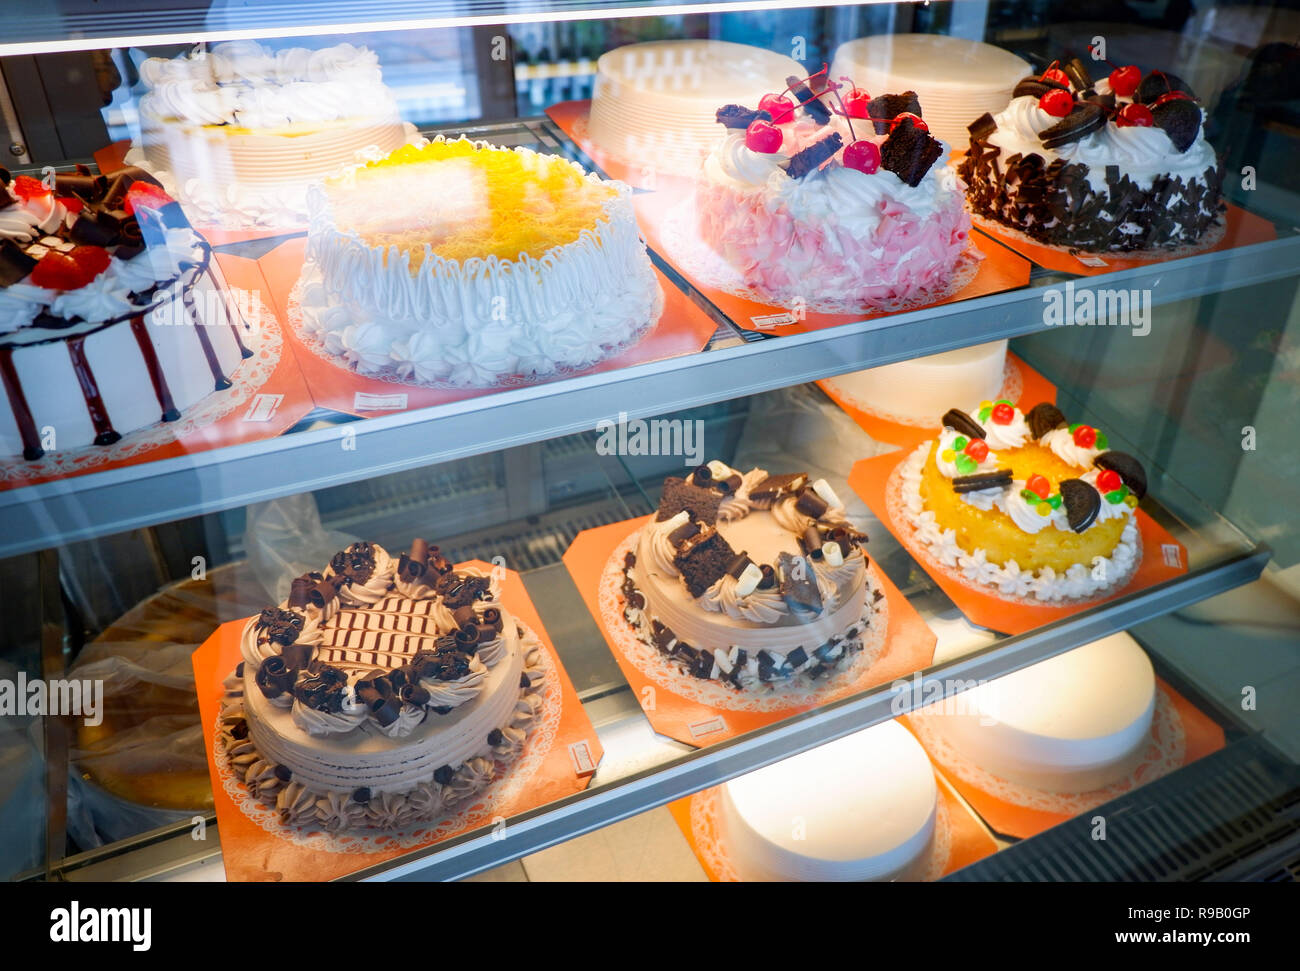 Différents types de gâteau / vitrine en verre gâteau bac affichage à rayon boulangerie pâtisserie - Vitrine avec des bonbons Chocolat au lait fraise cakes Banque D'Images